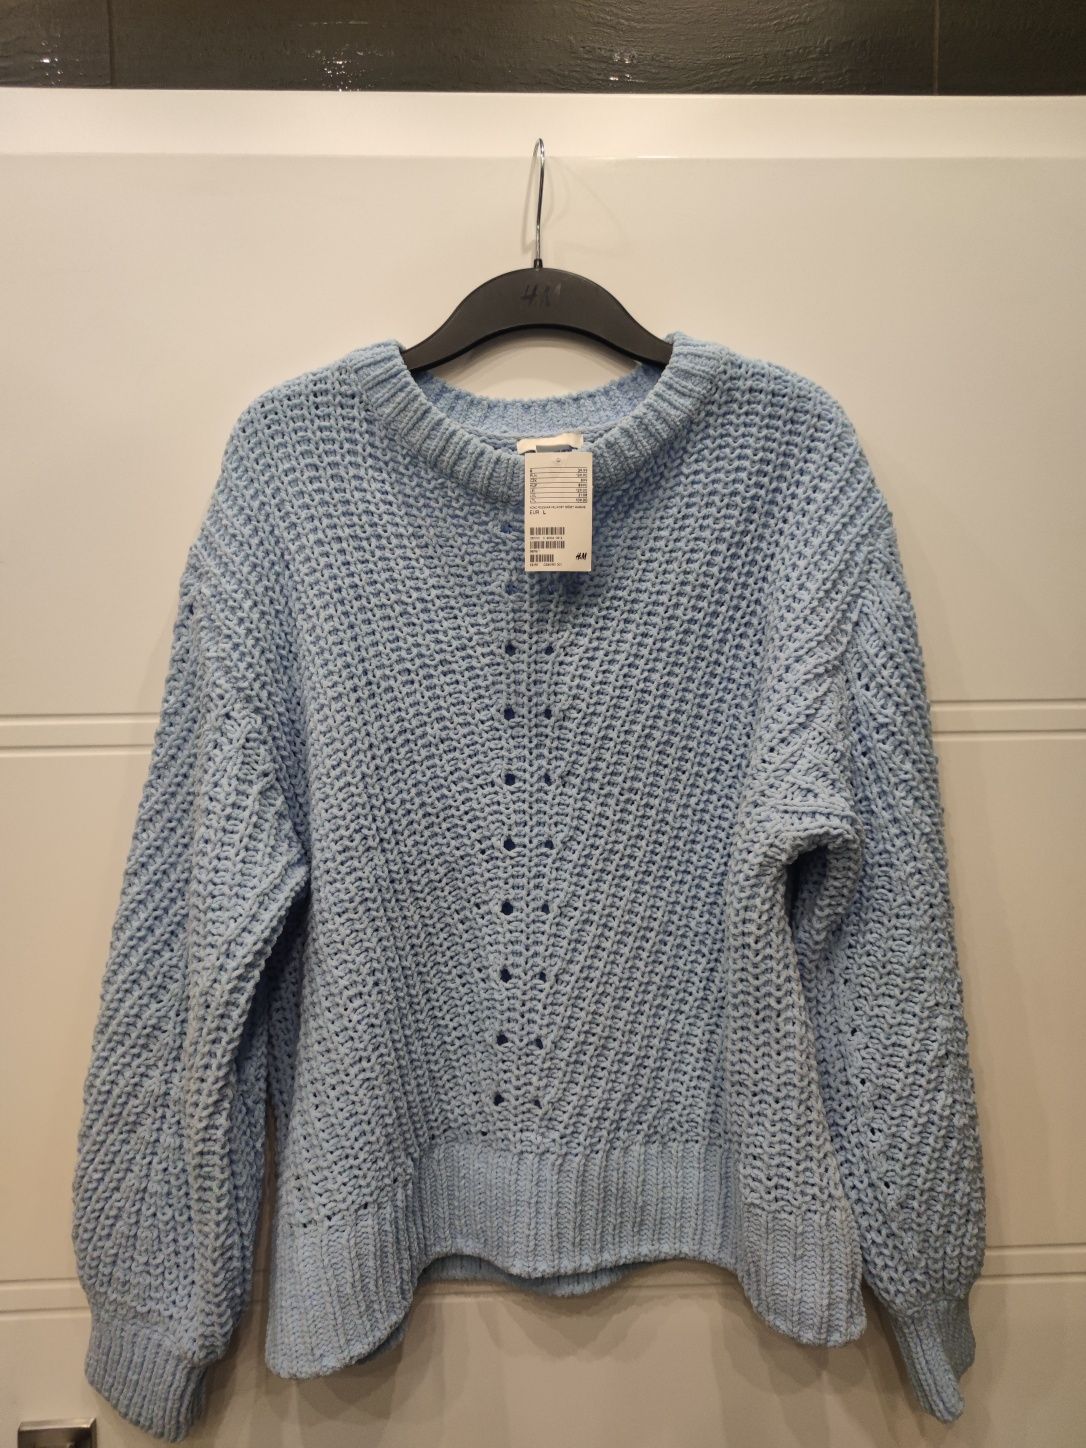 Śliczny ażurowy błękitny sweter H&M. Nowy 50 zł TANIEJ niż w sklepie!